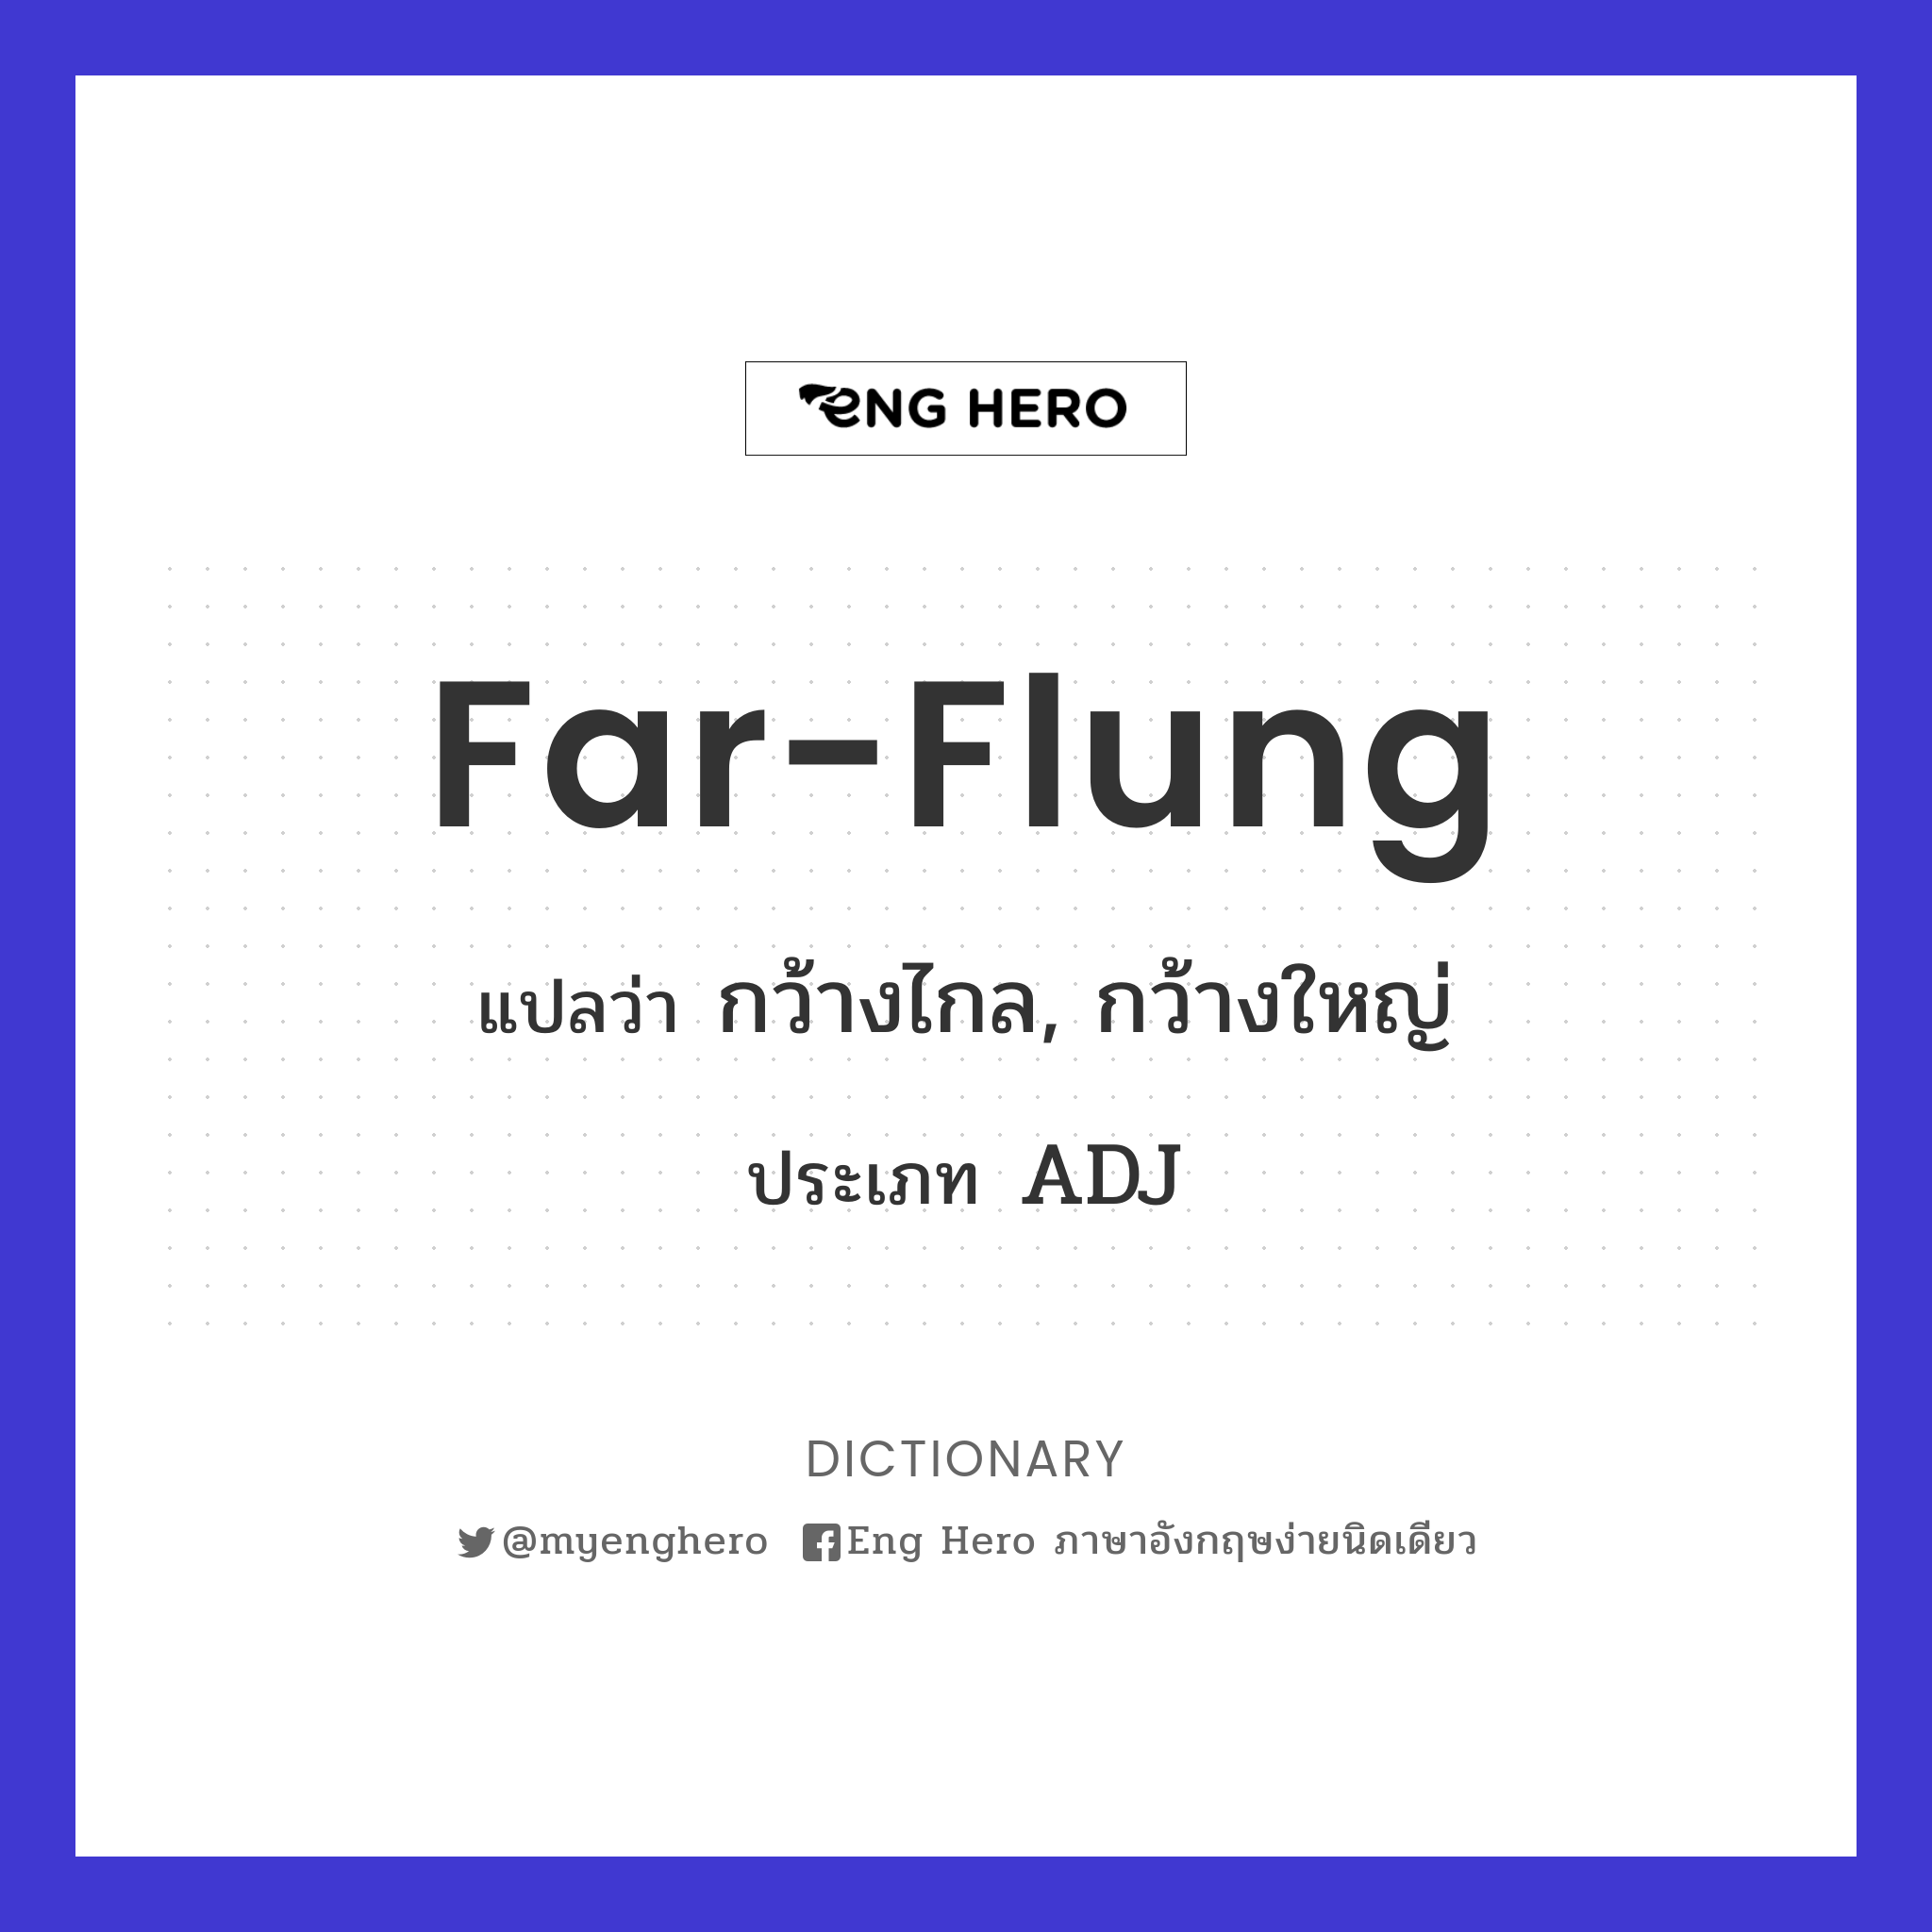 far-flung